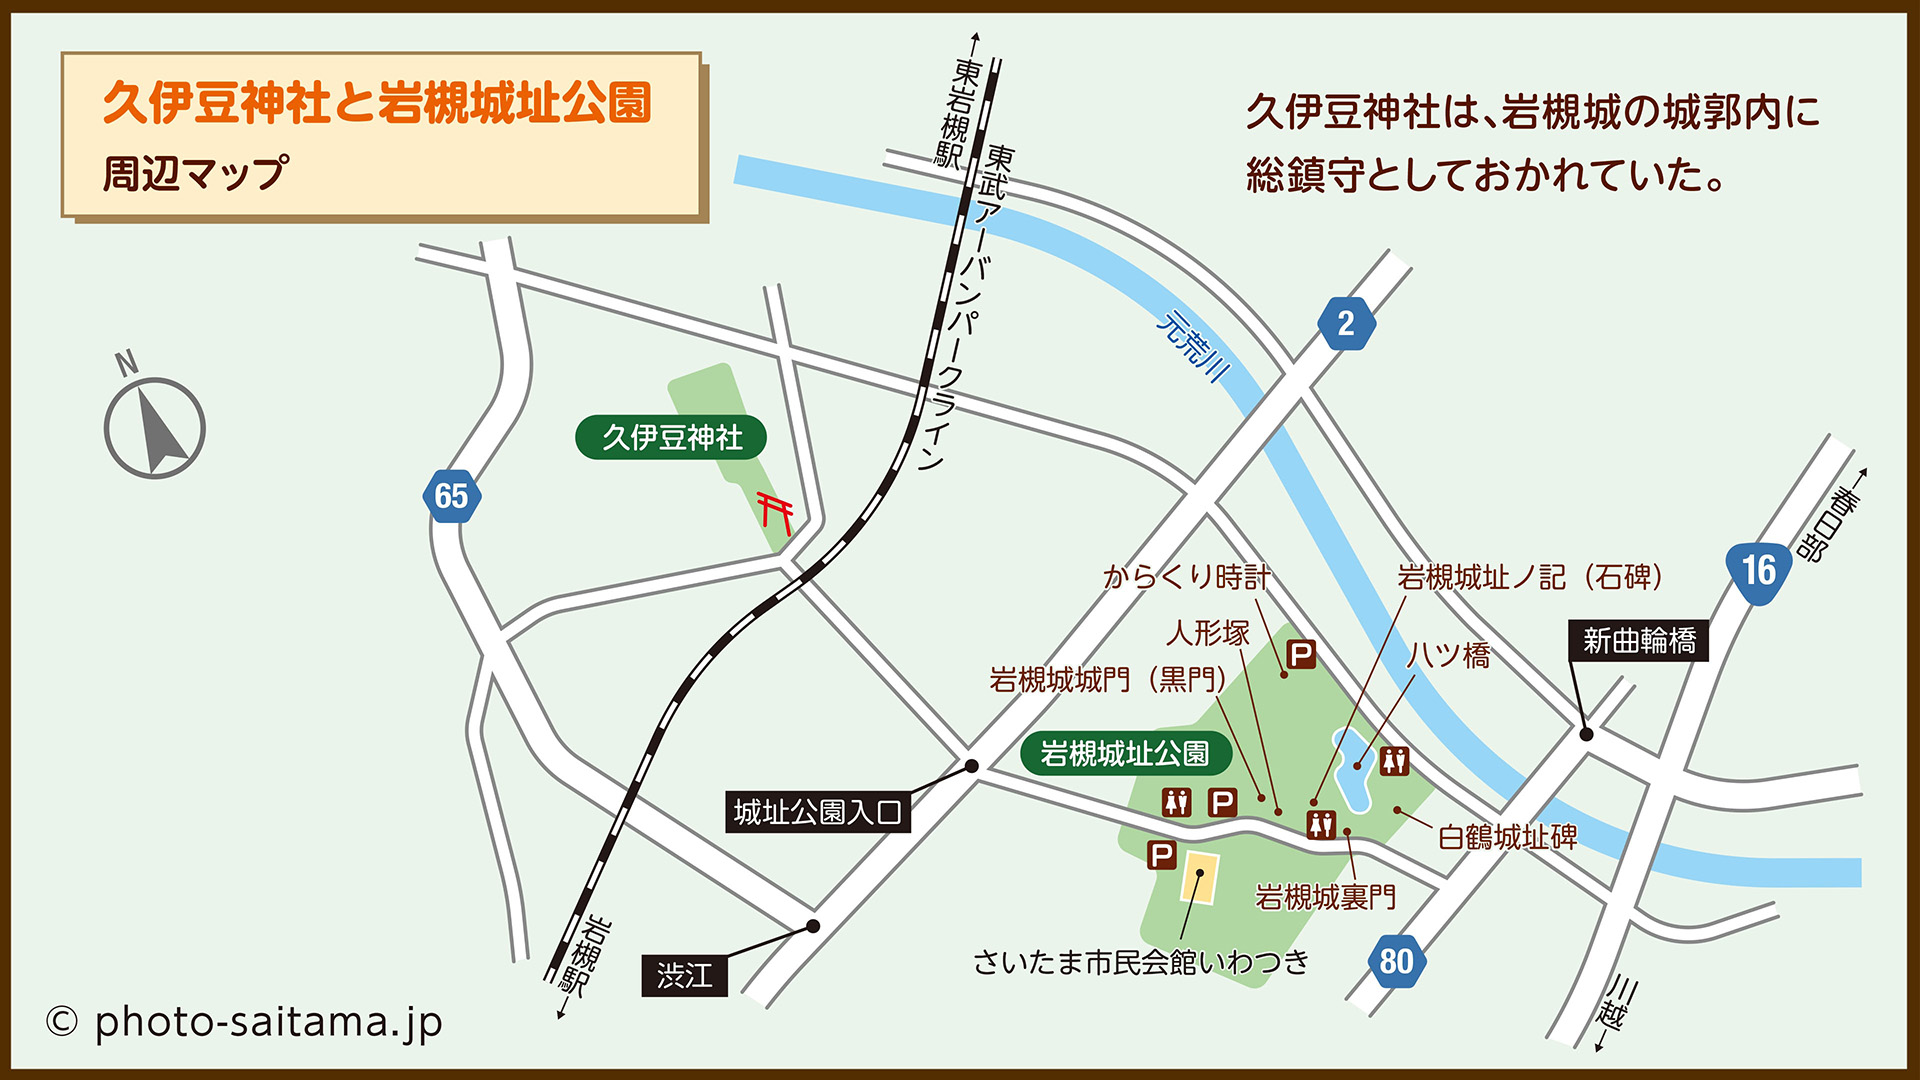 久伊豆神社と岩槻城址公園 周辺マップ（さいたま市岩槻区）| フォトさいたま